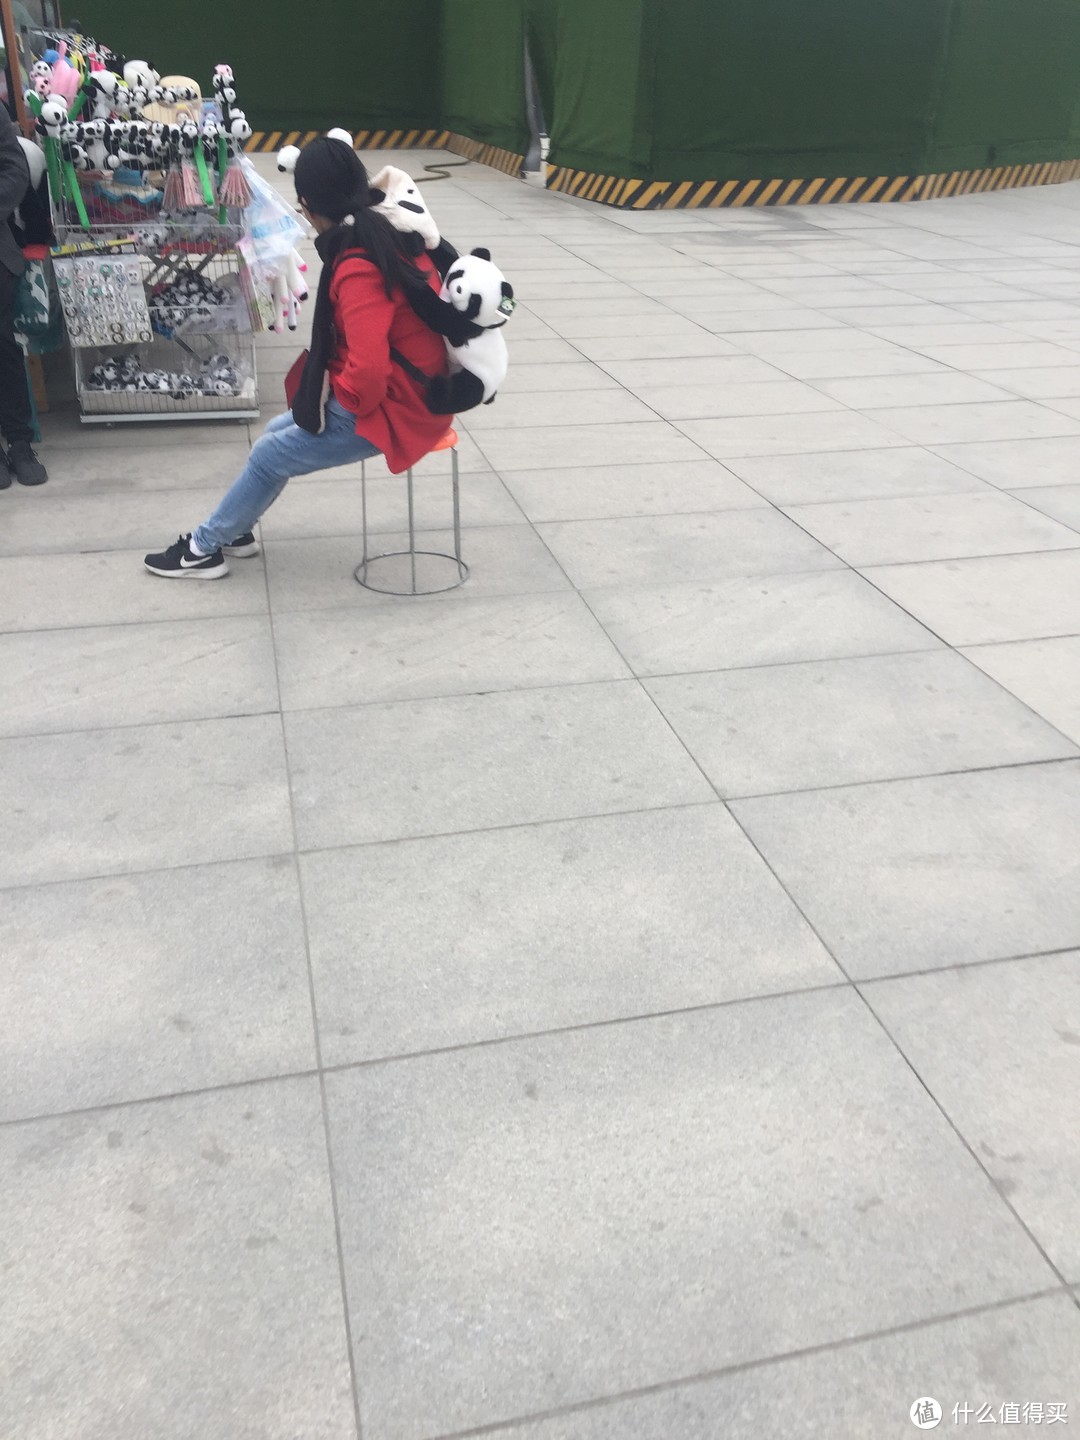 停车场卖熊猫周边的商贩